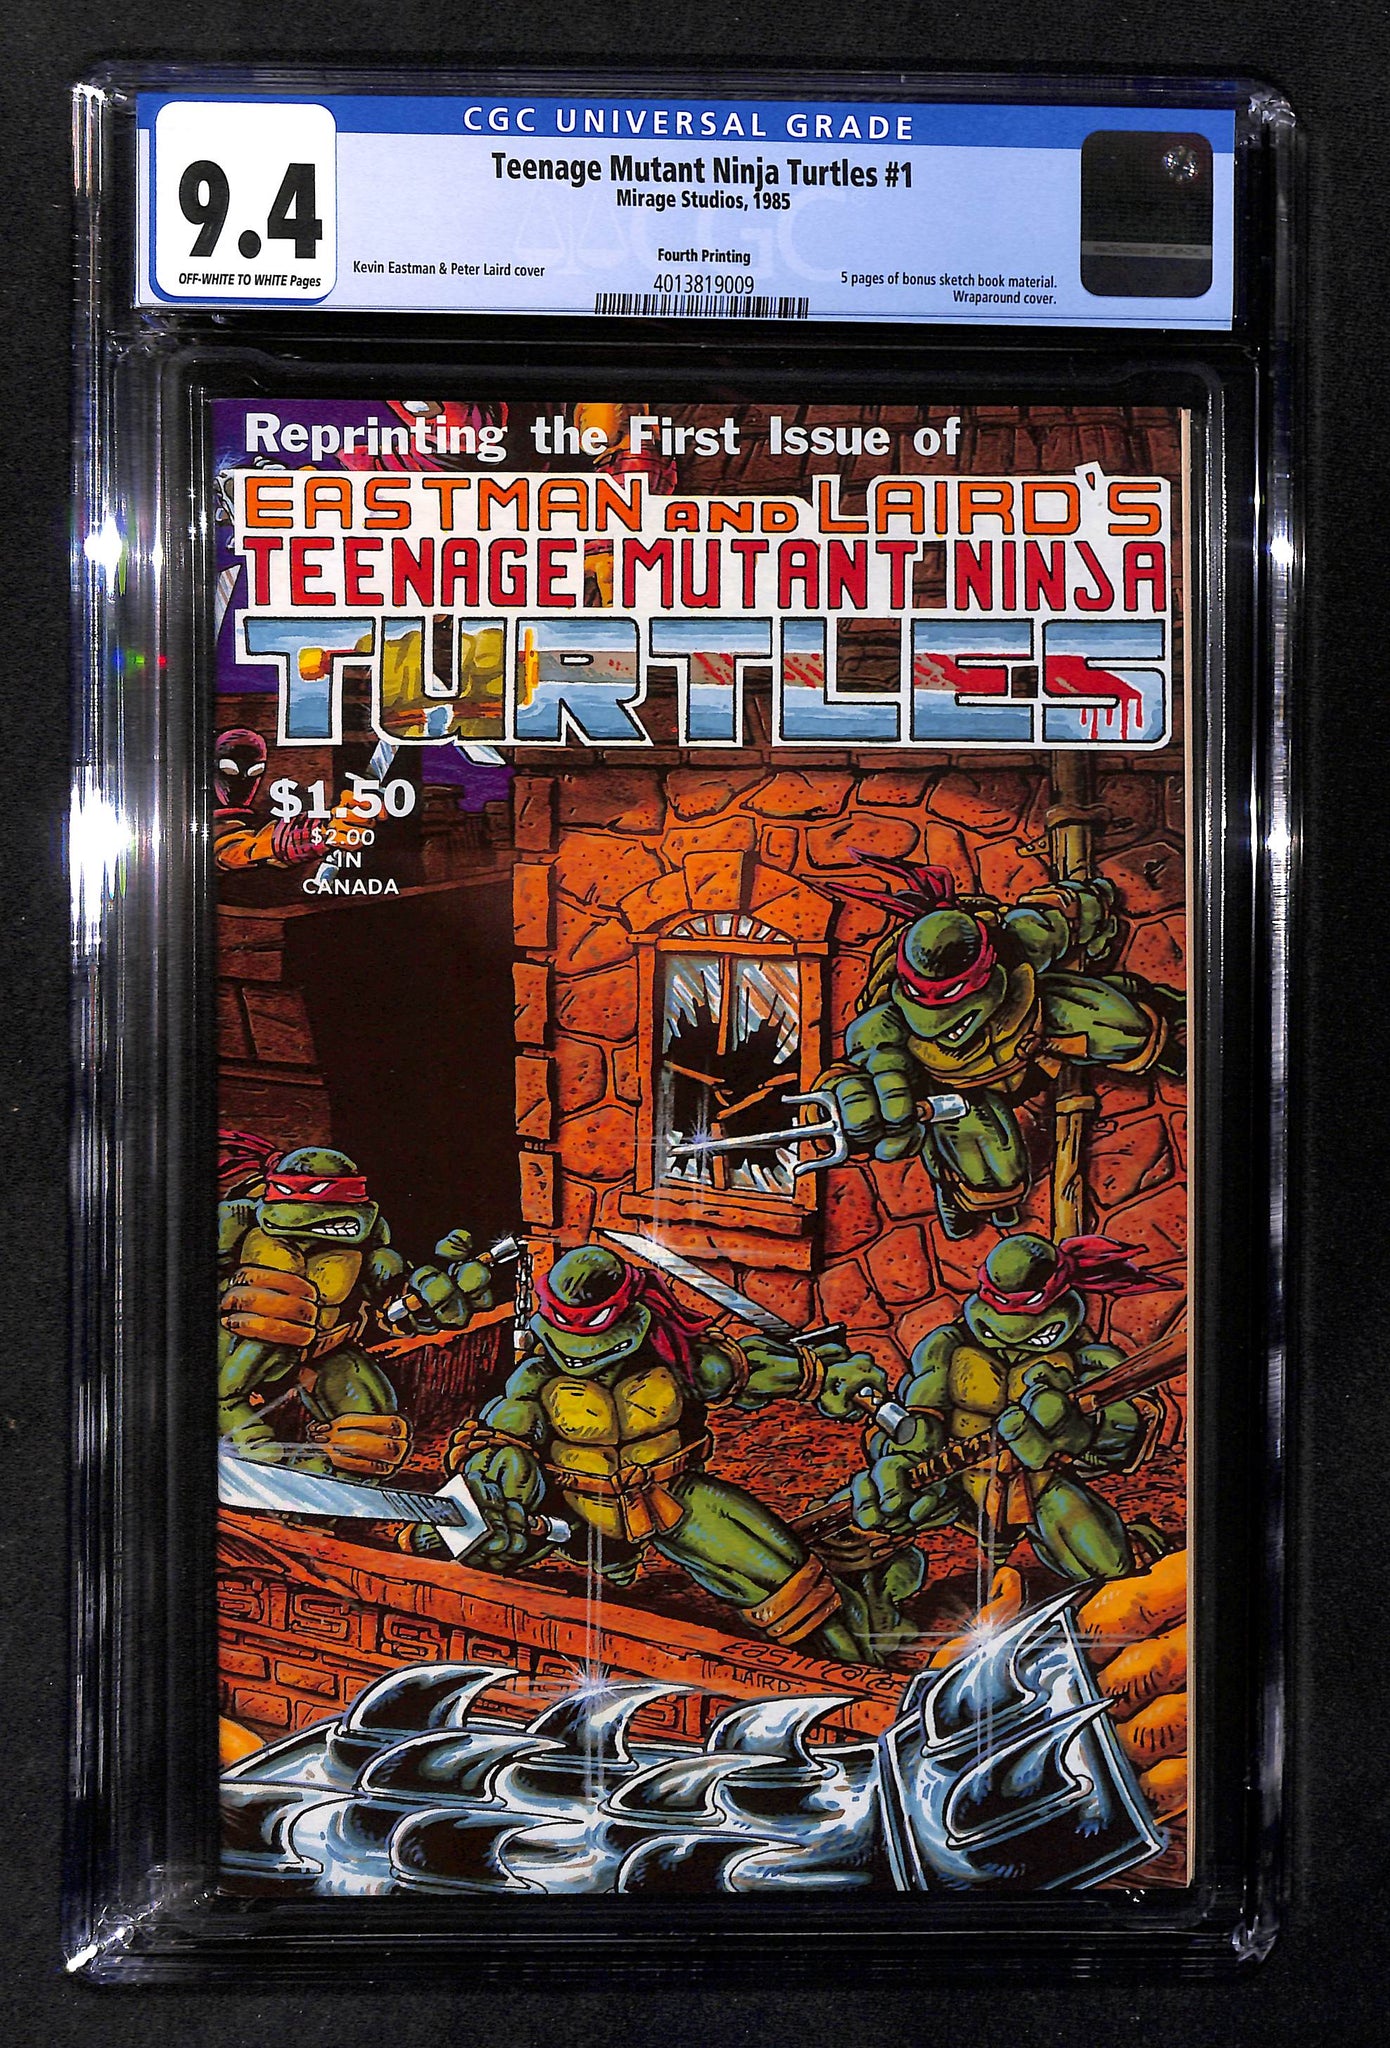 Teenage Mutant Ninja Turtles #1 - CGC 9.4 - Fourth Printing